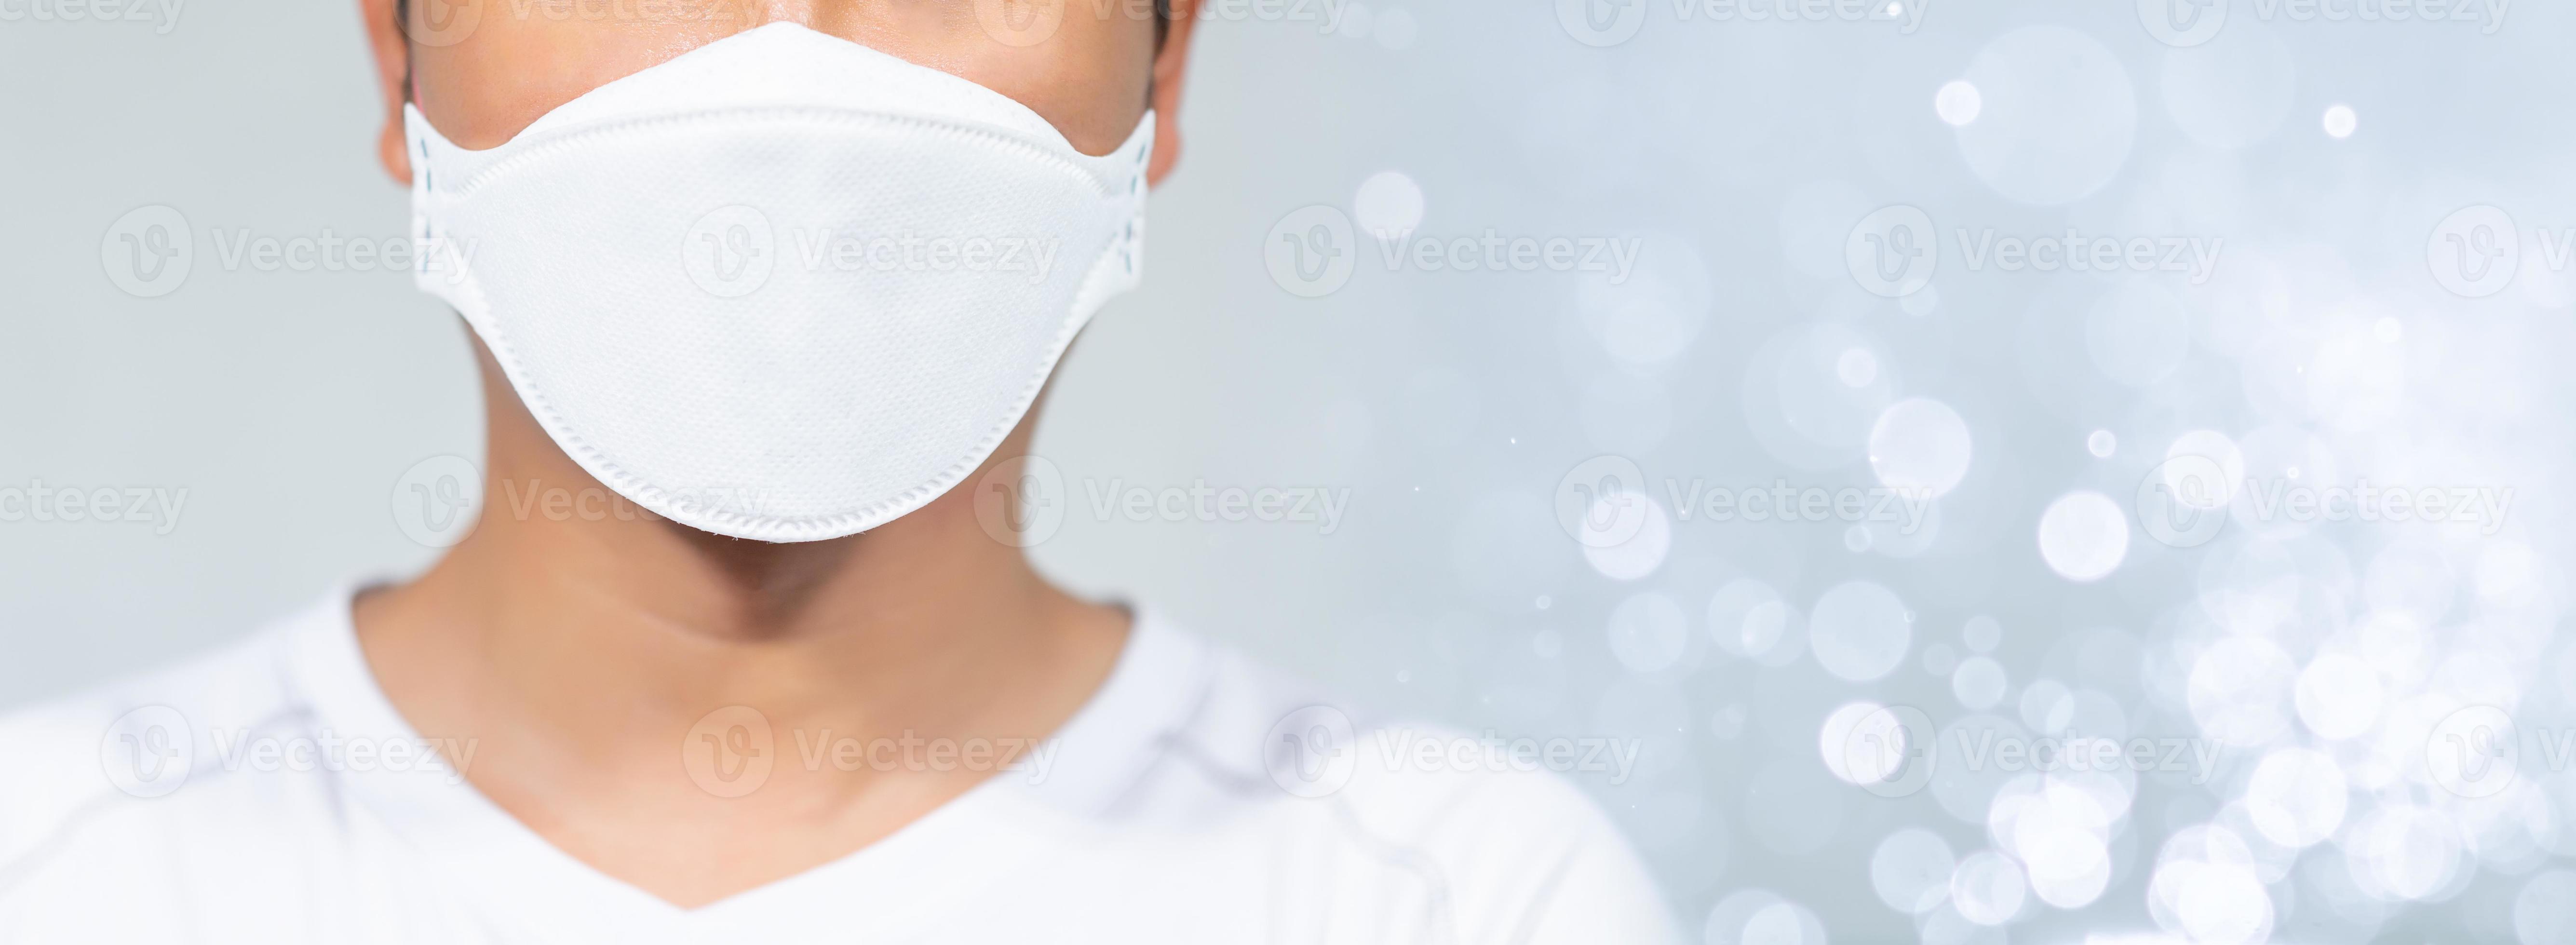 Männer, die Masken tragen, um das Coronavirus Covid-19 zu schützen foto